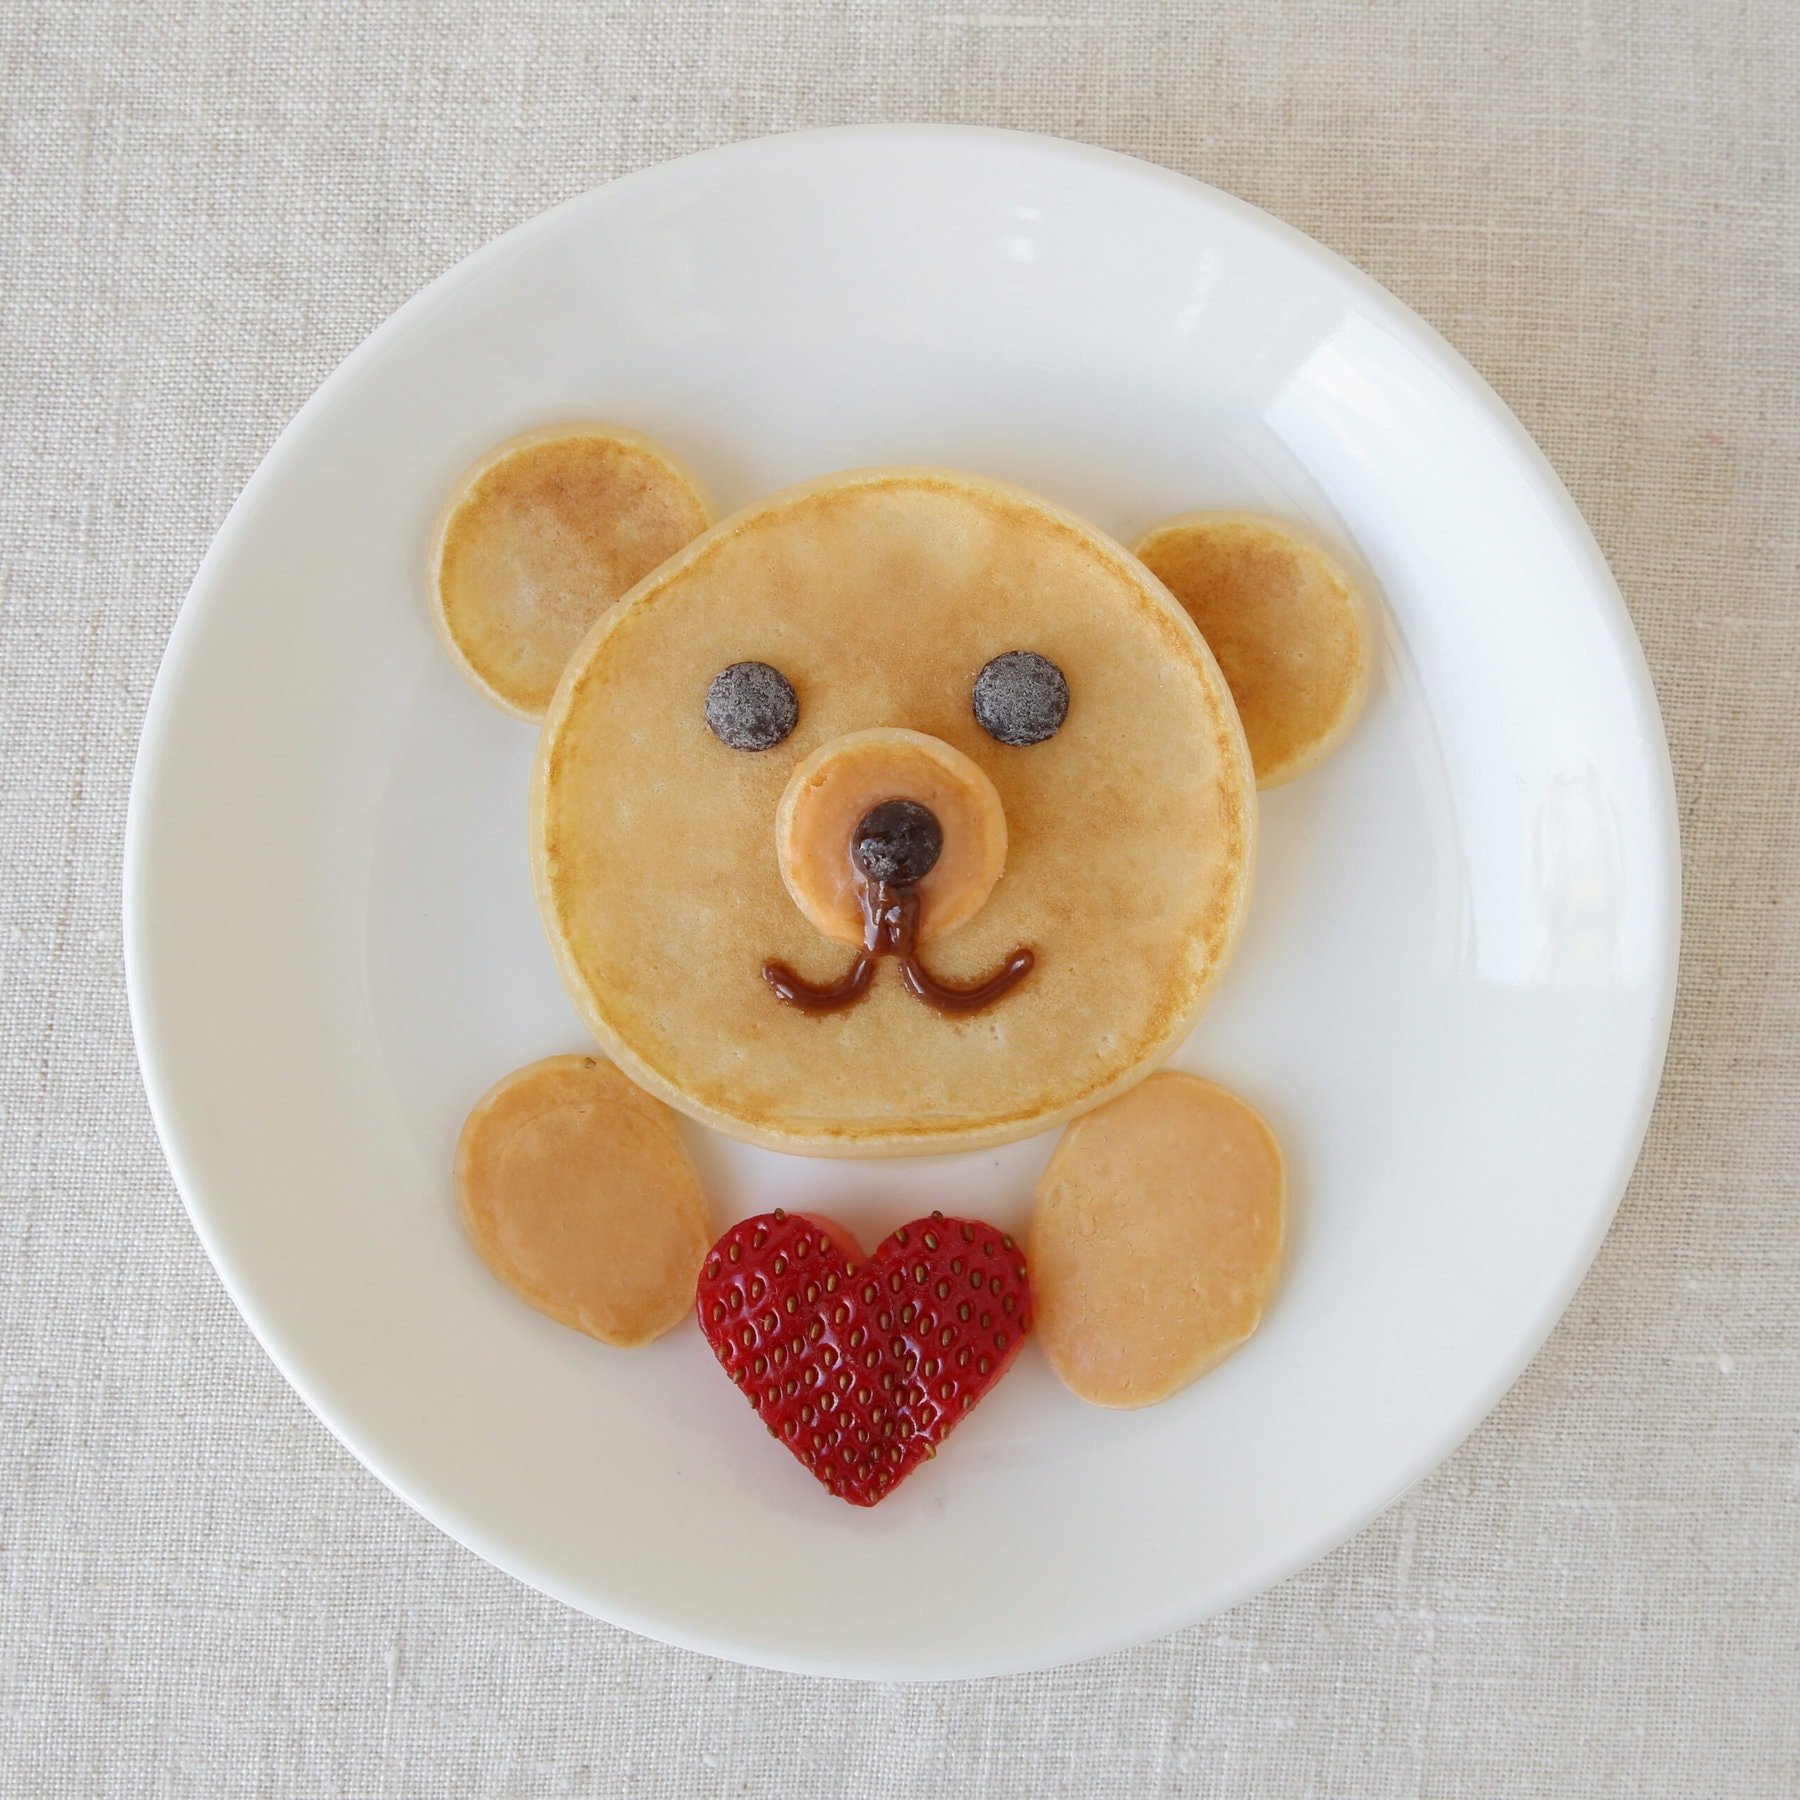 Teddy bear face pancakes on a plate